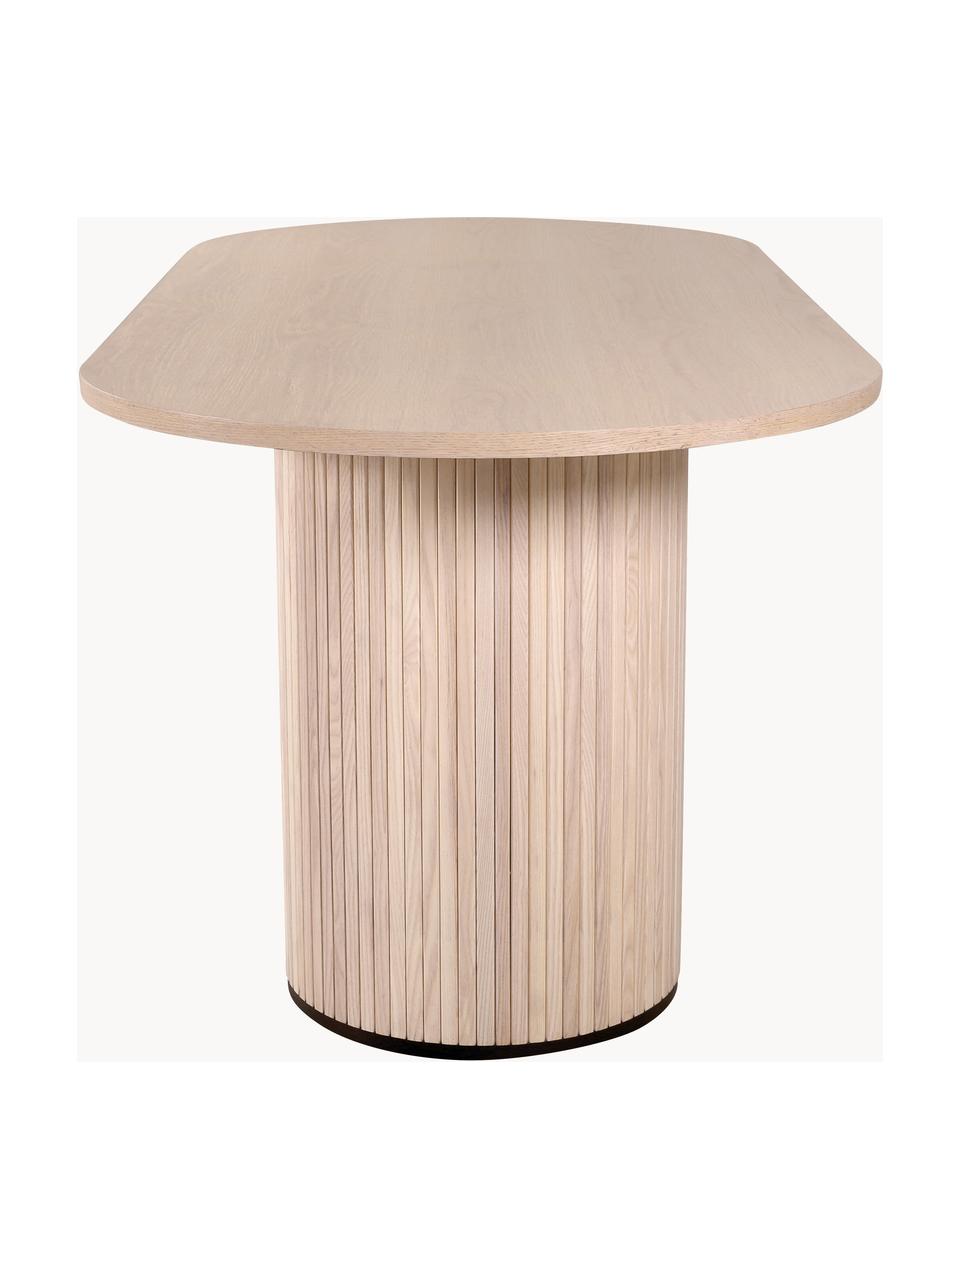 Ovale houten eettafel Bianca, 200 x 90 cm, Tafelblad: MDF met eikenhoutfineer, , Frame: trompetboomhout, geborste, Eikenhout, licht gelakt, B 200 x D 90 cm